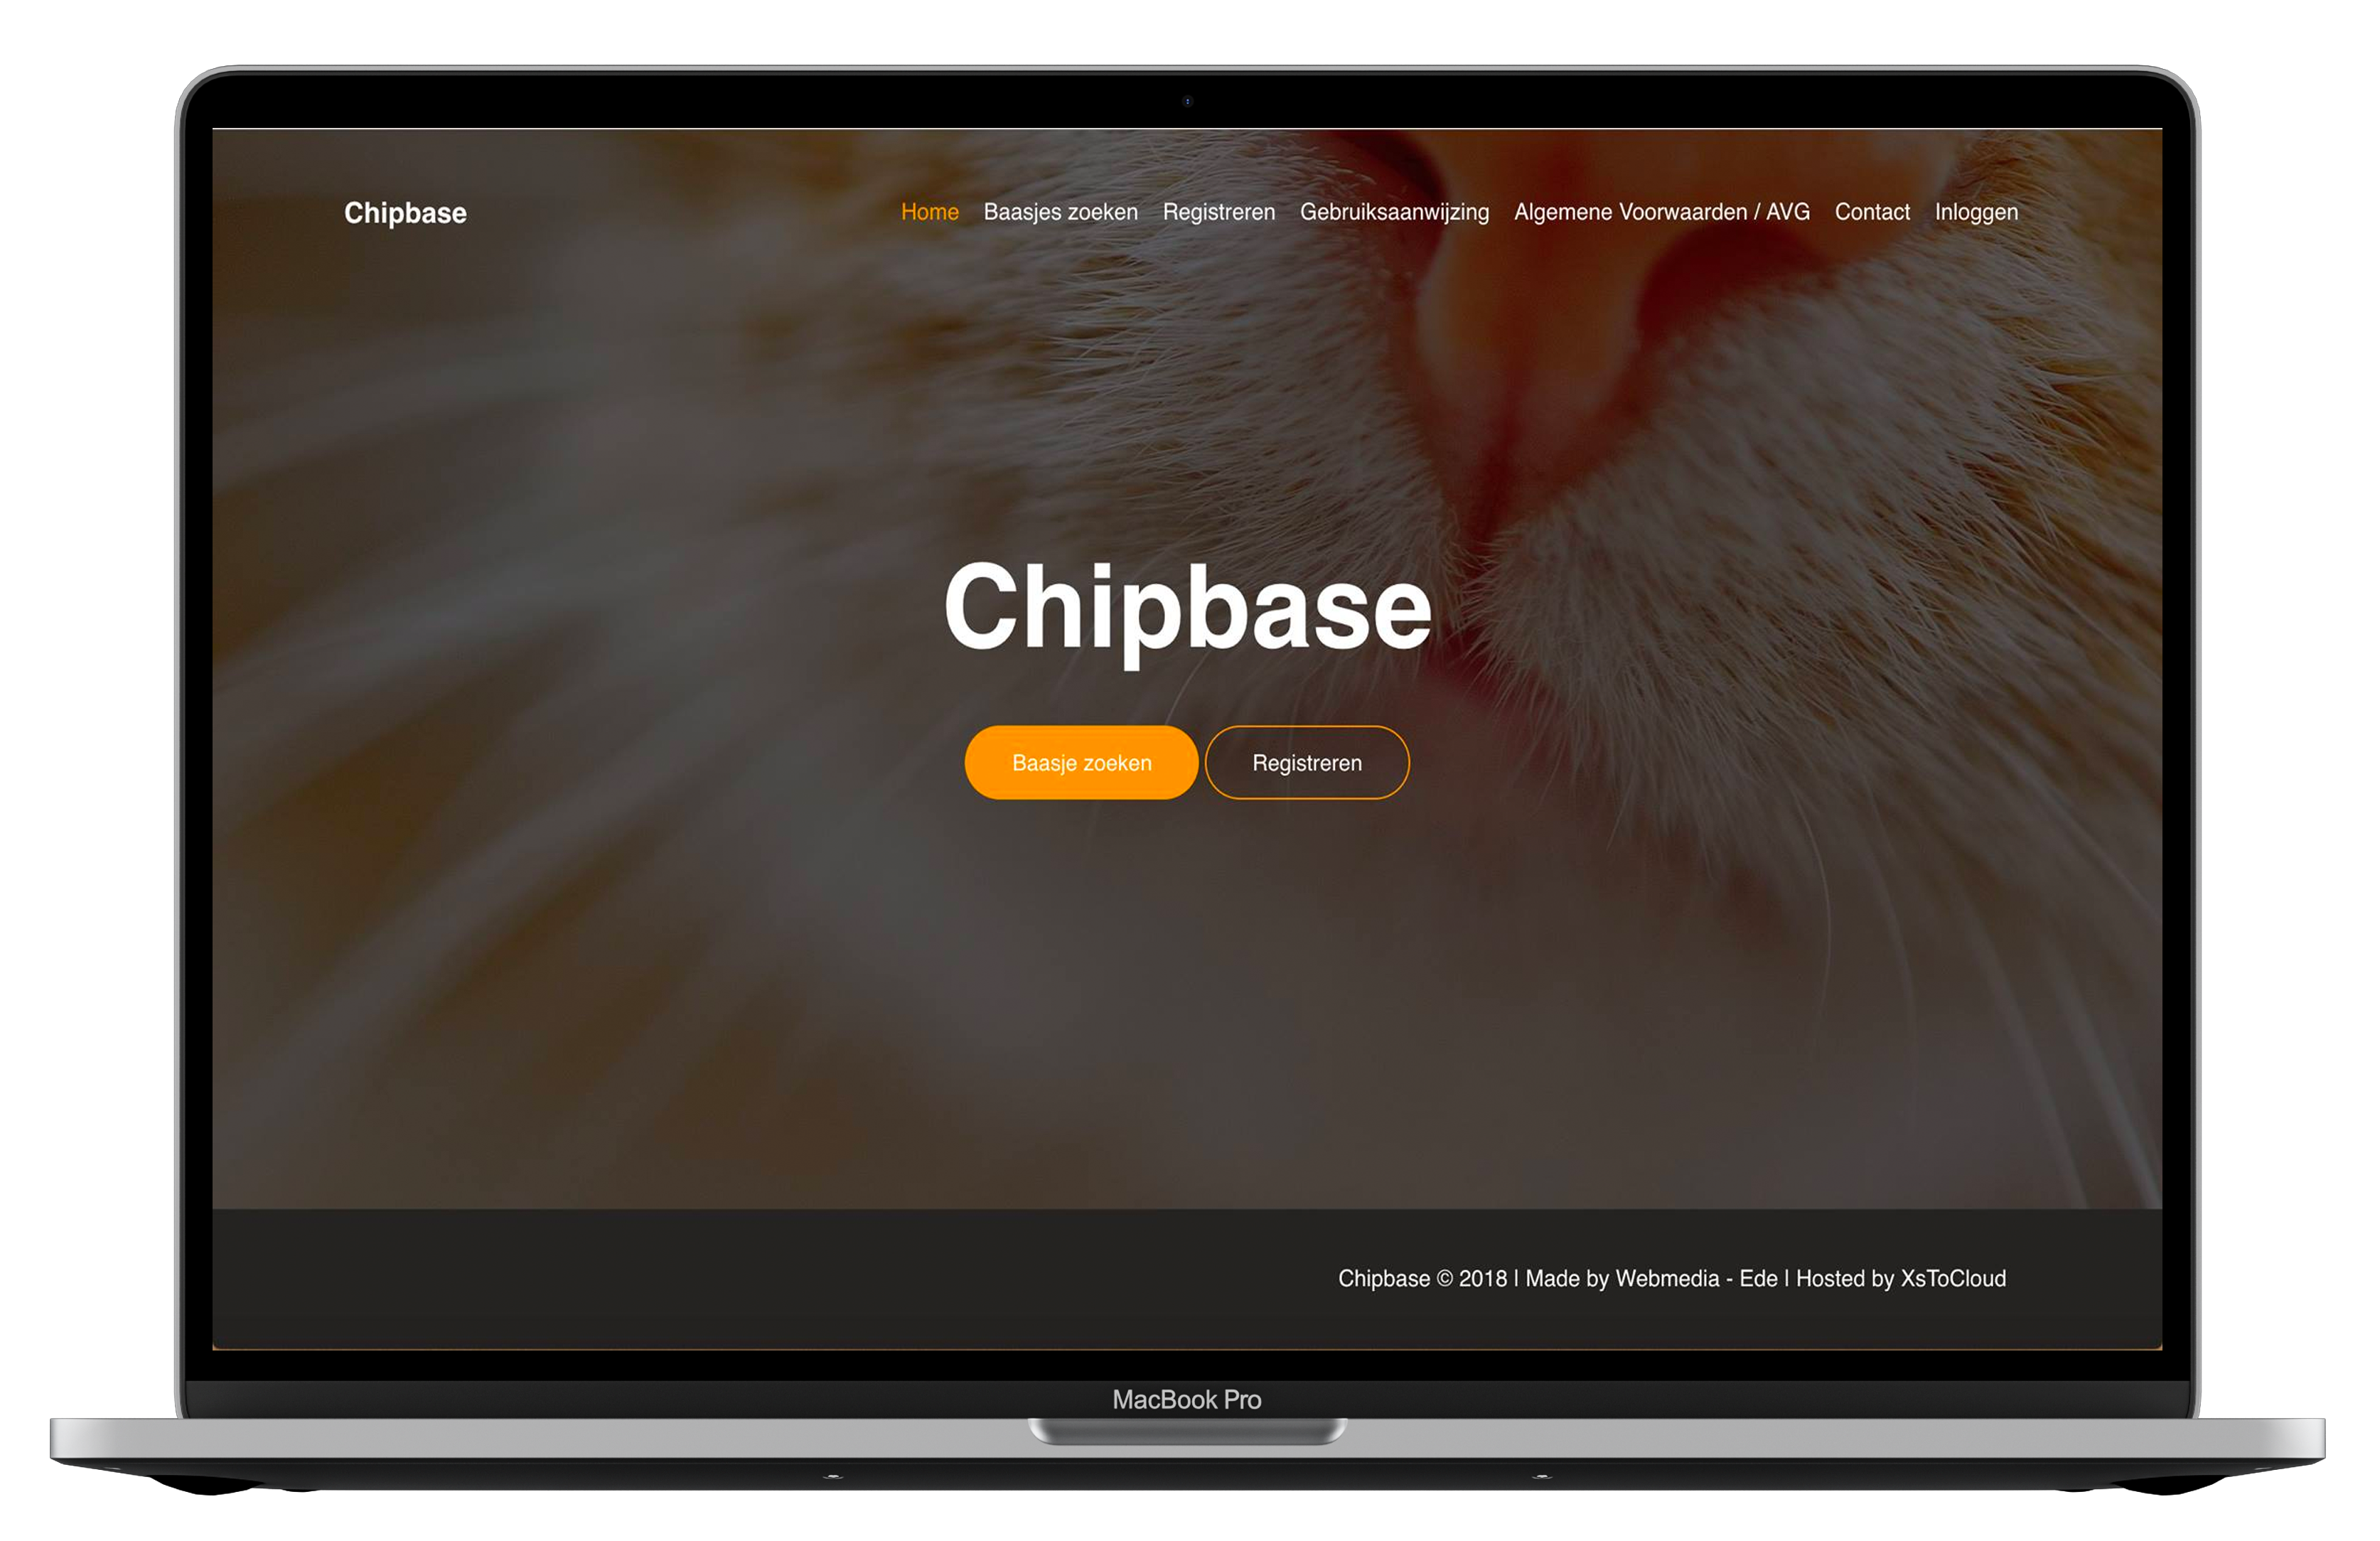 Chipbase